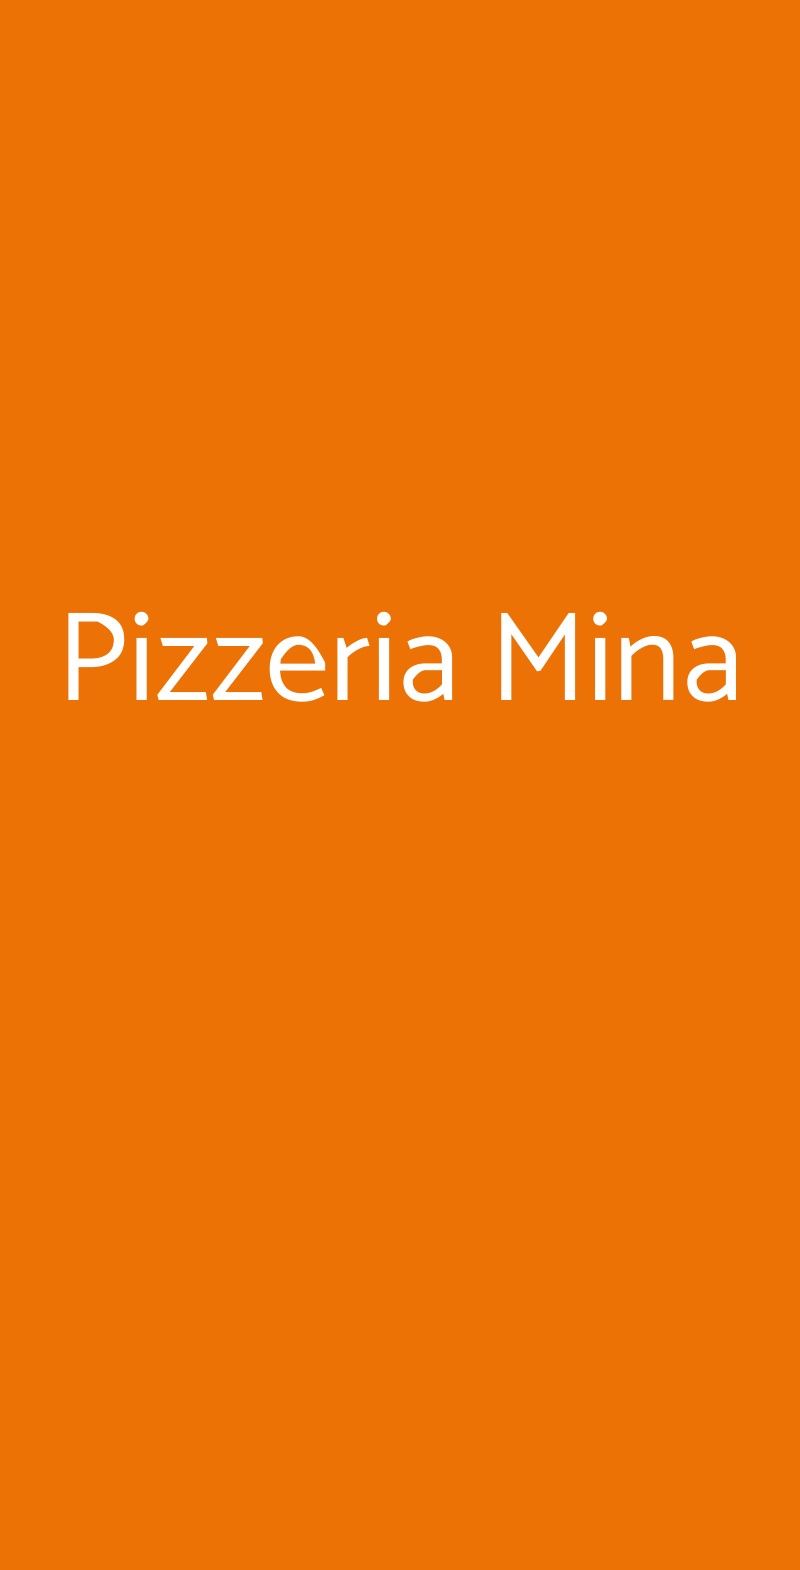 Pizzeria Mina Milano menù 1 pagina